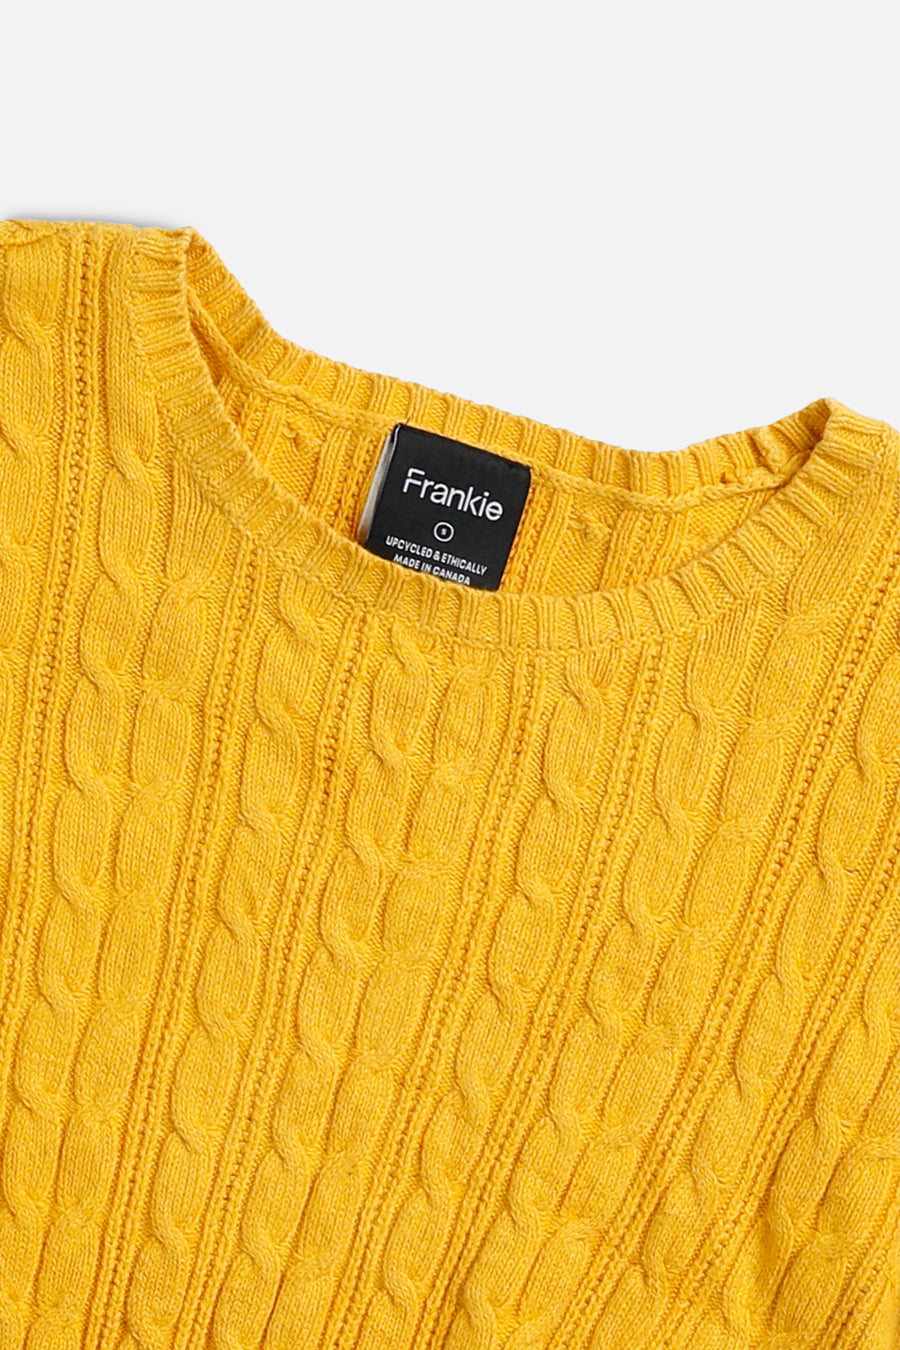 Rework Crop Knit Sweater - S